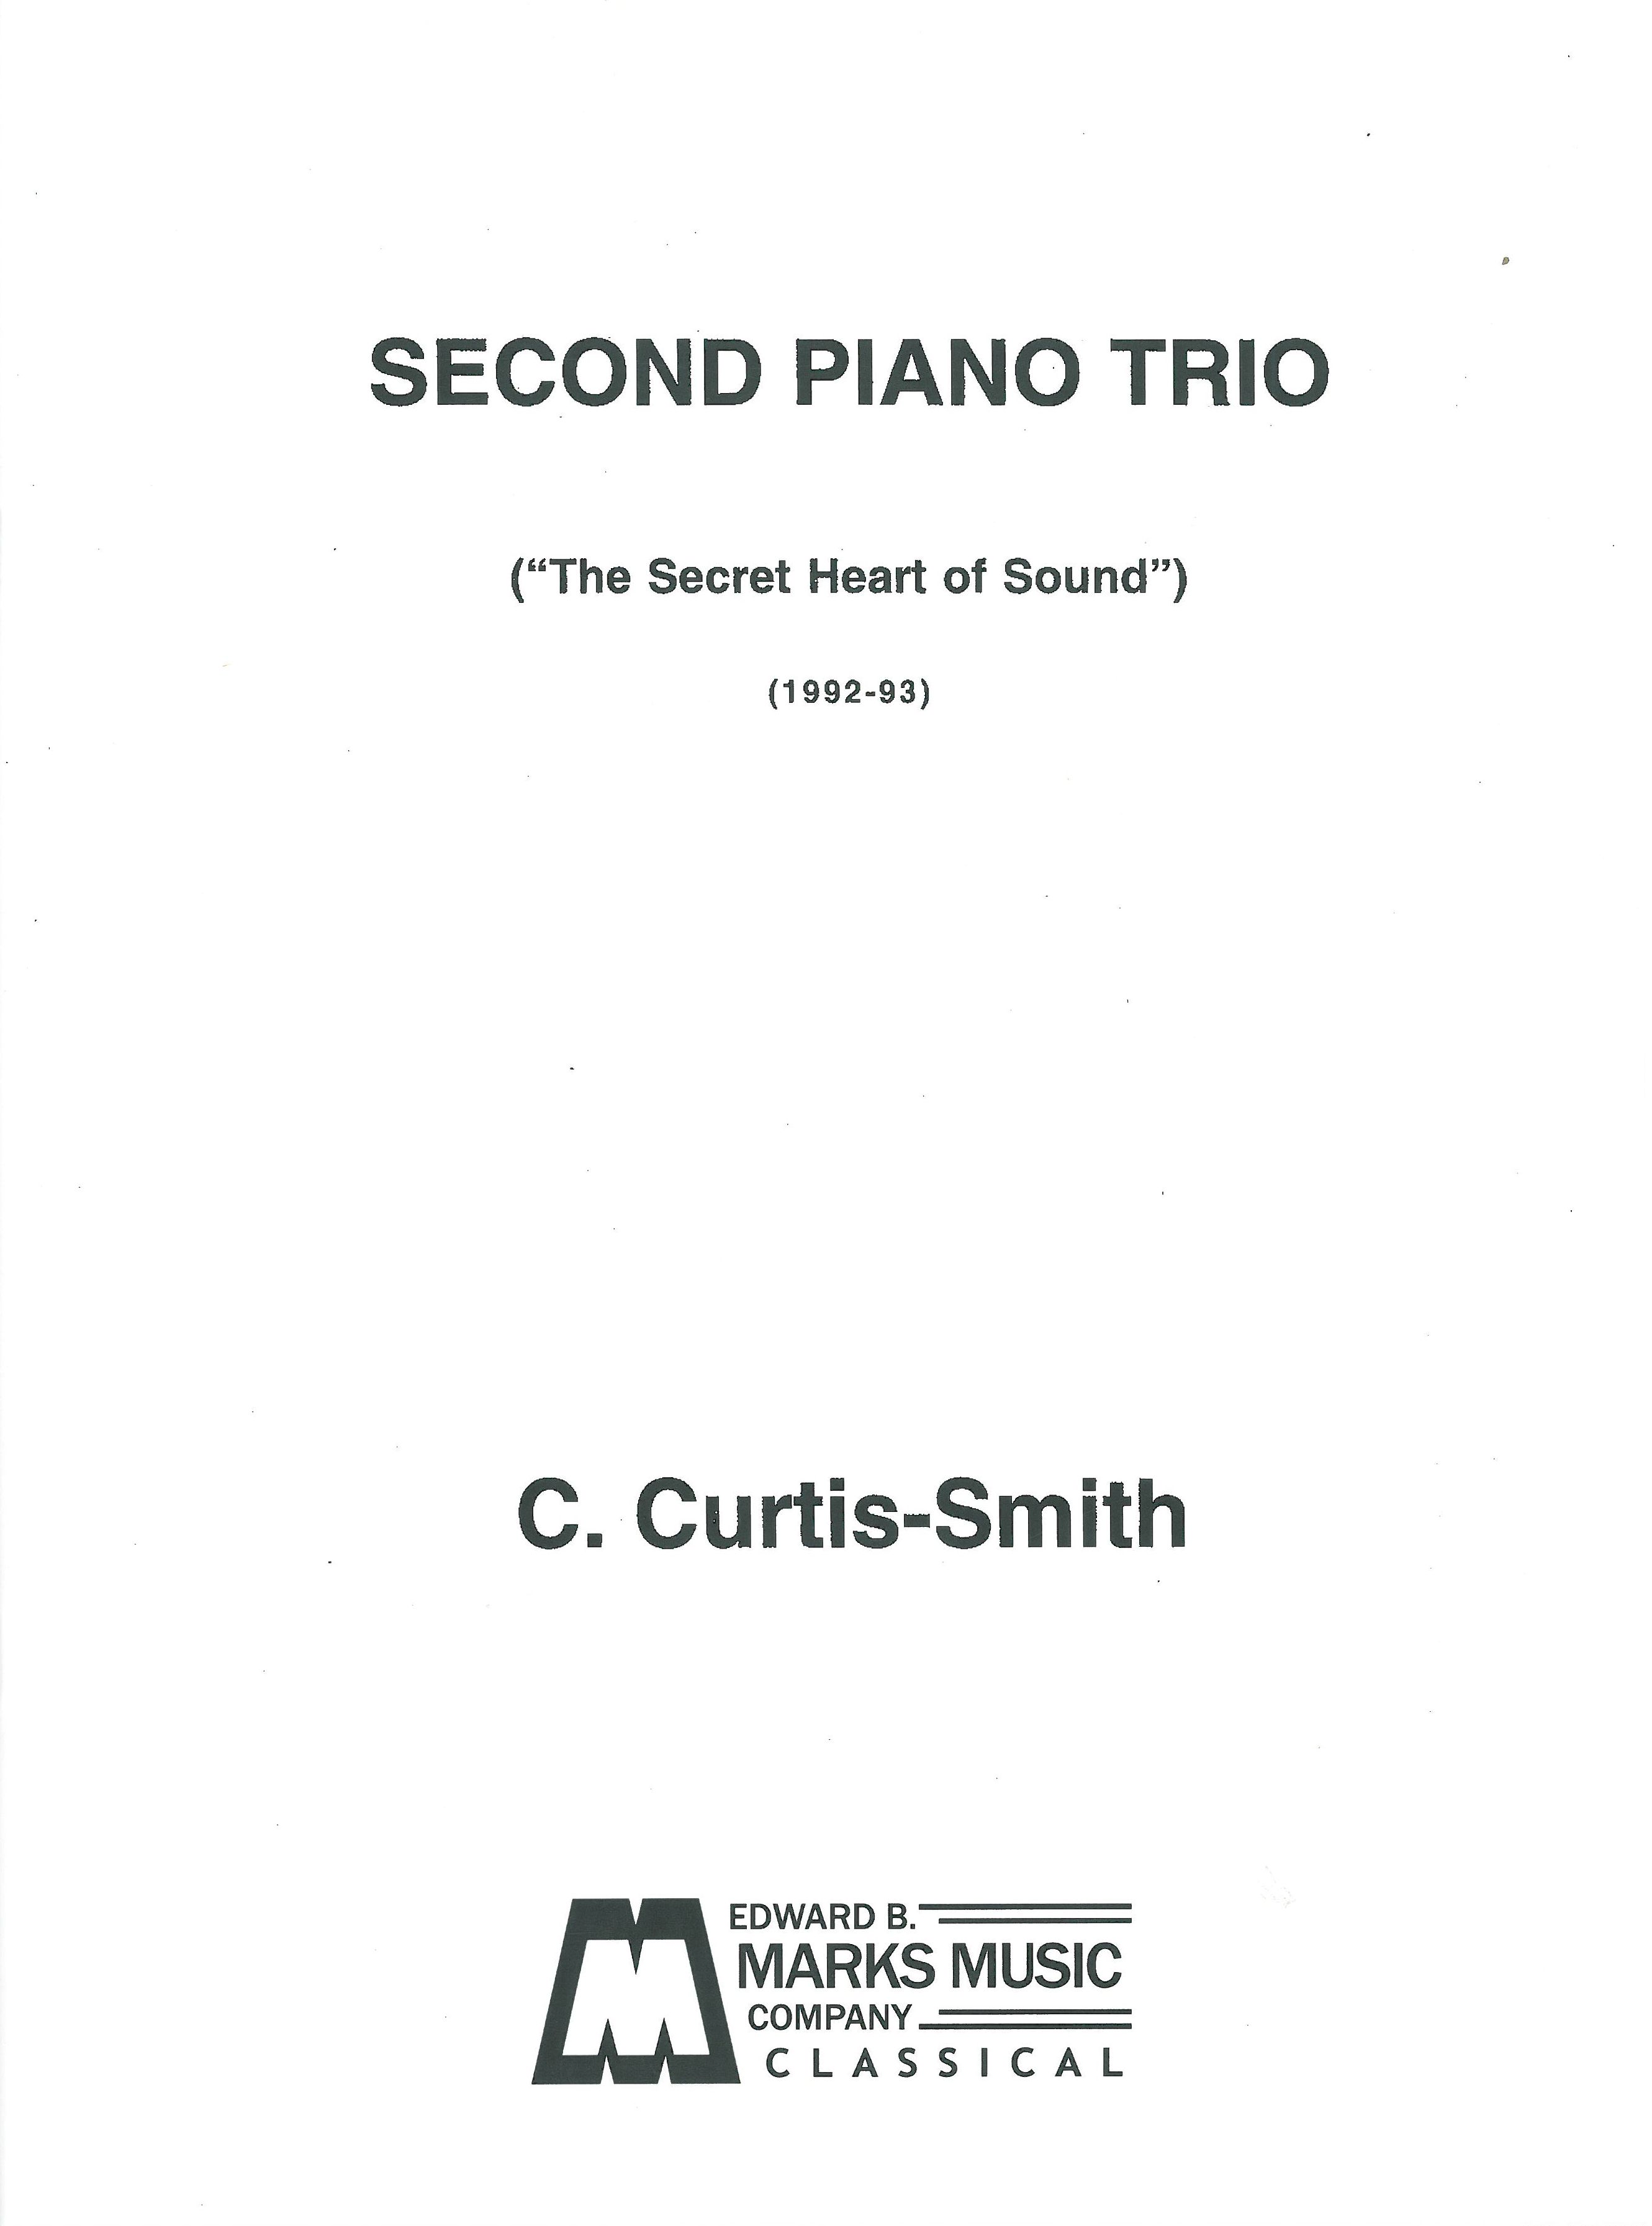 Piano Trio No. 2 (The Secret Heart Of Sound) (1992-93).